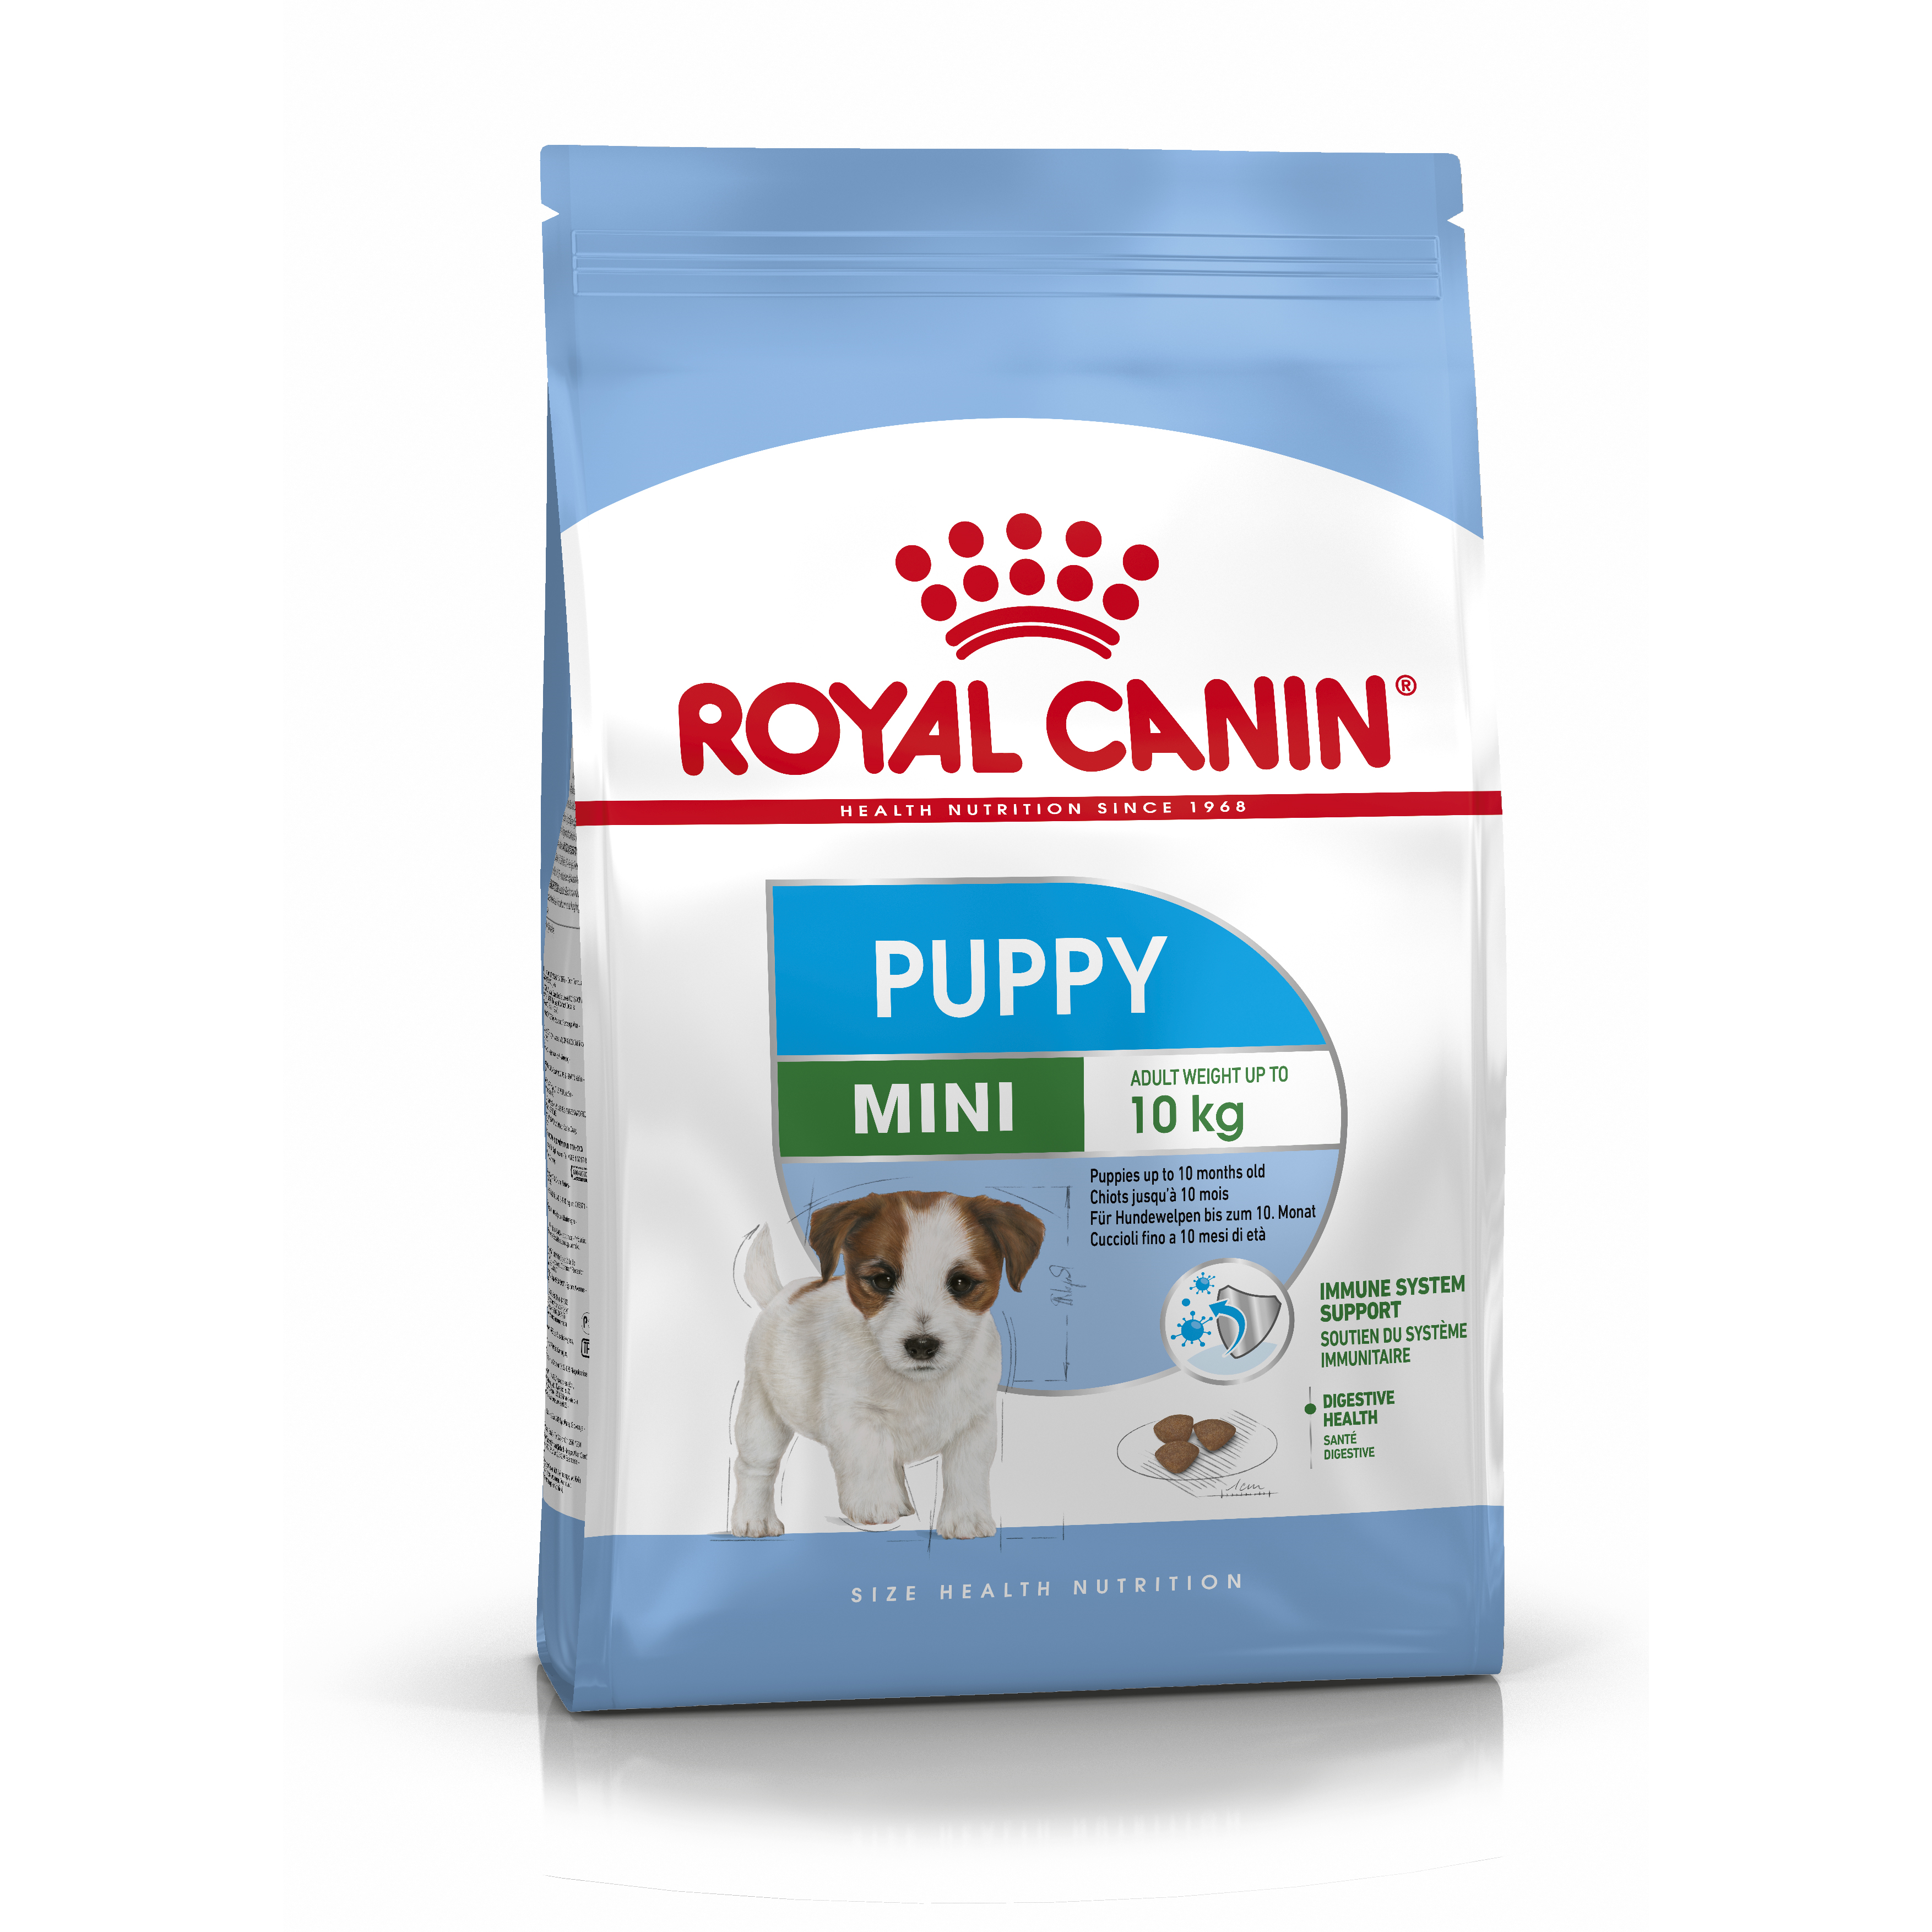 Повседневный корм Royal Canin (Роял Канин) для собаки